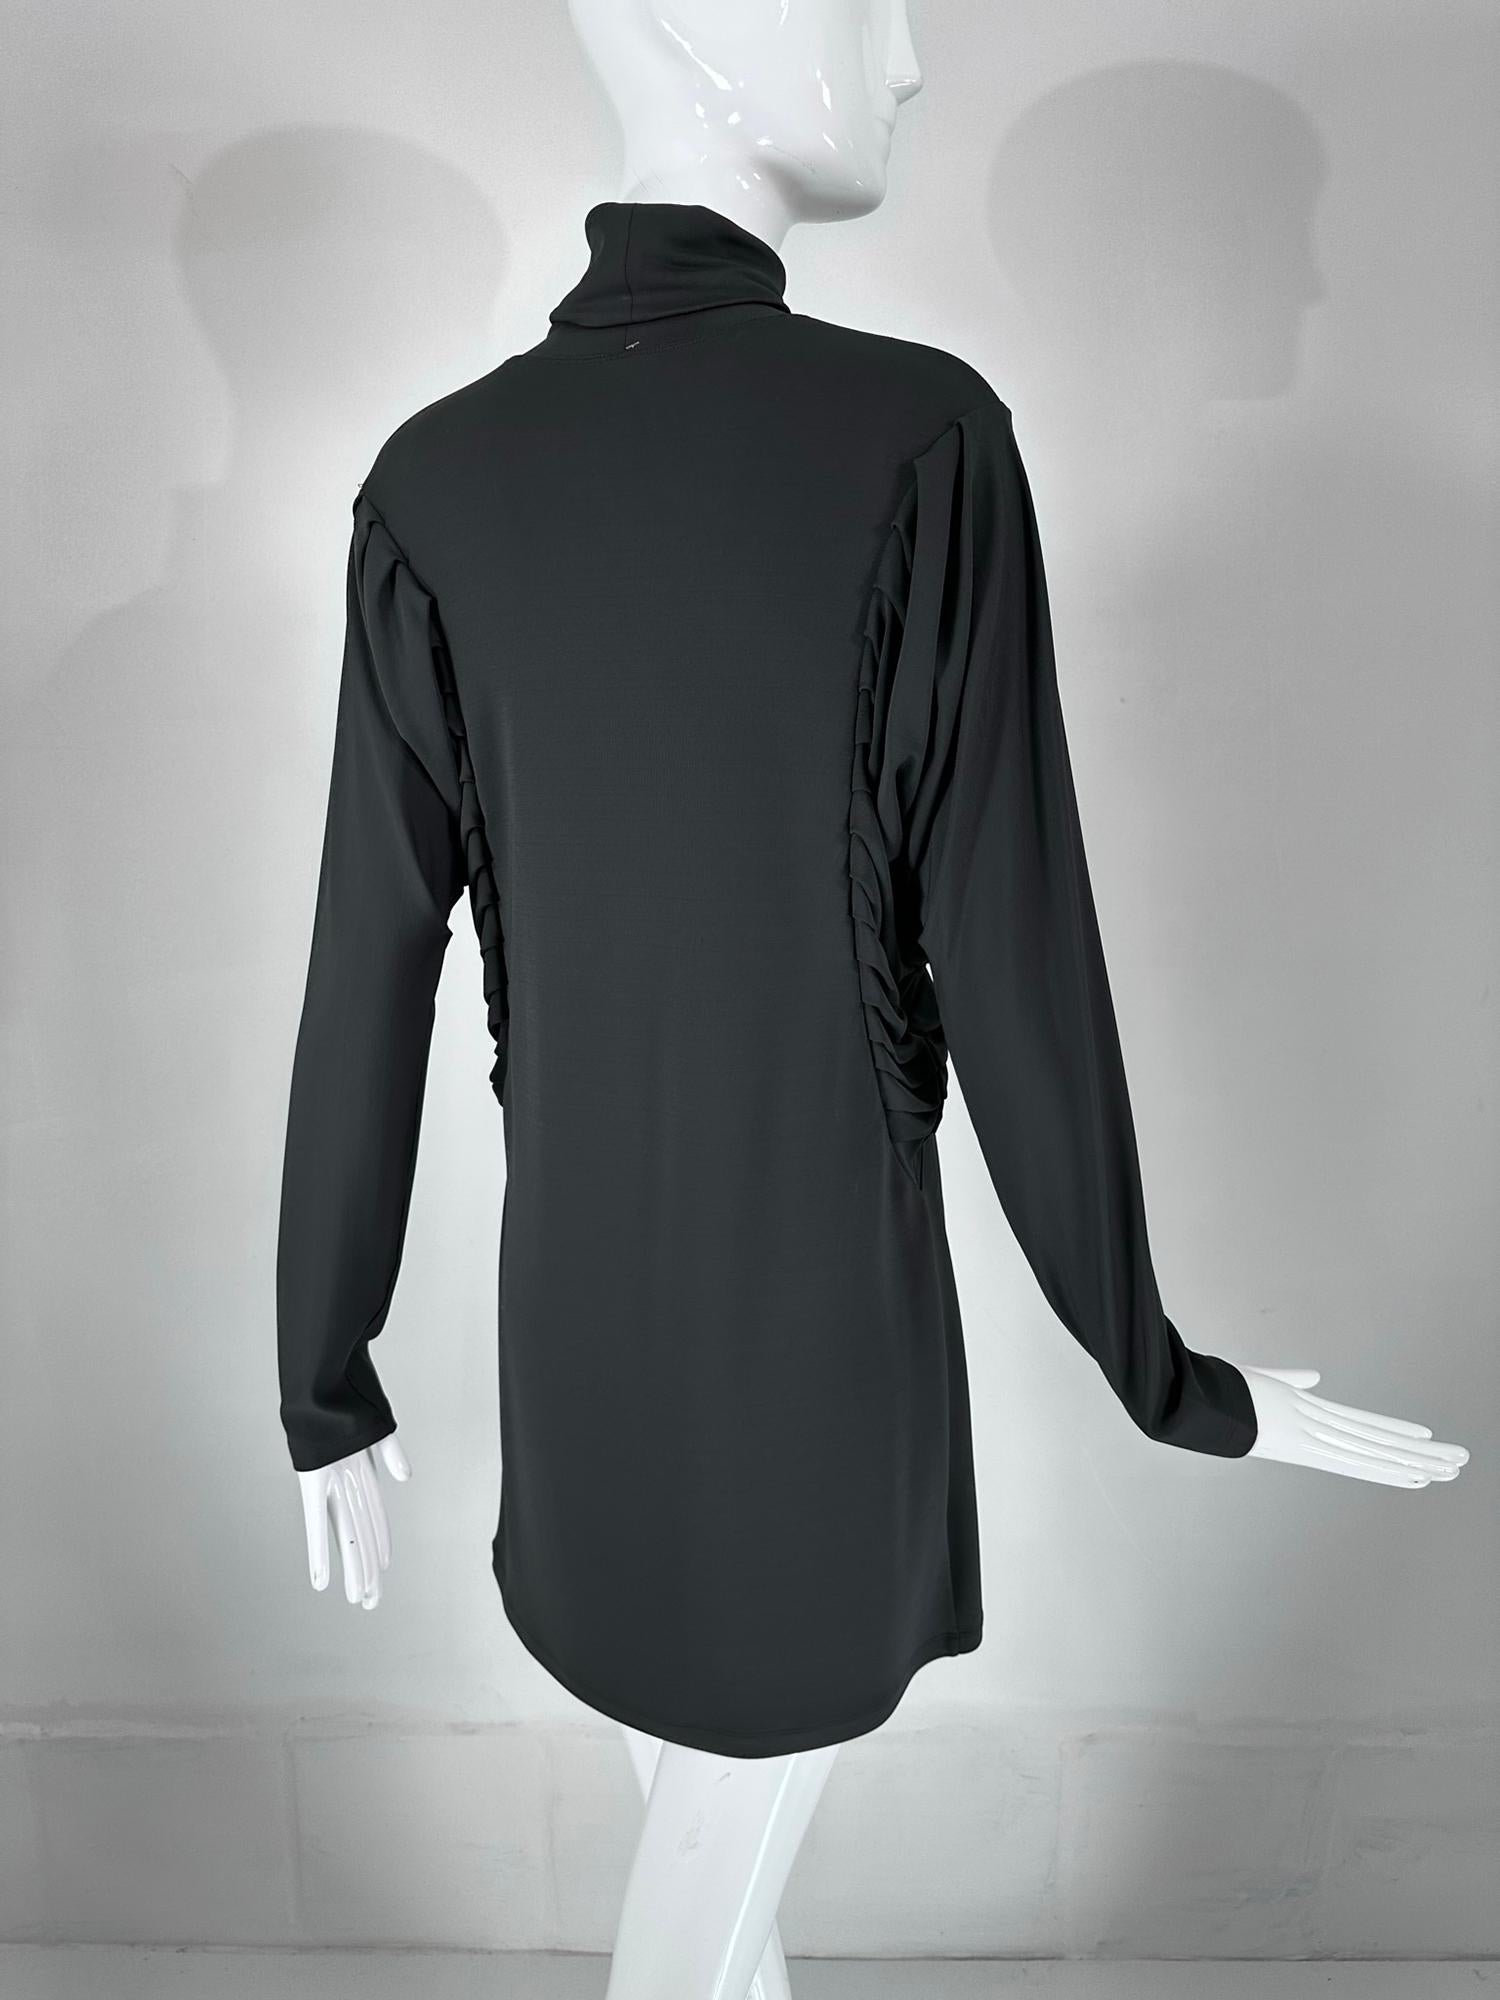 Fendi Silky Black Jersey Pleated Bat Wing Turtle Neck Dress 40 For Sale 4